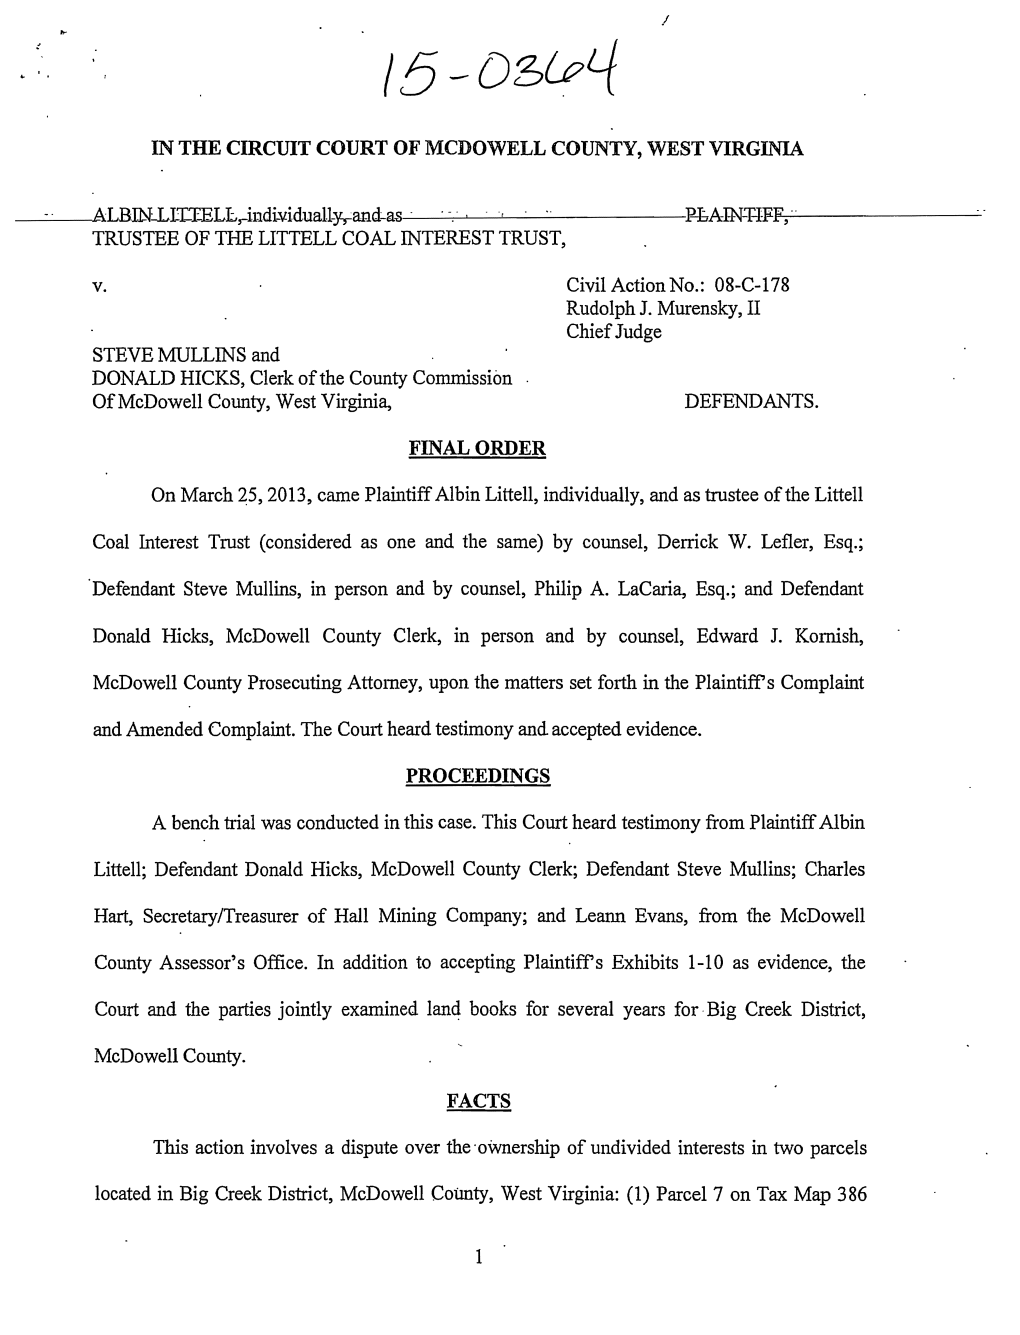 Lower Court Order, Albin Littell V. Steve Mullins and Mcdowell Co. Commission, No. 15-0364